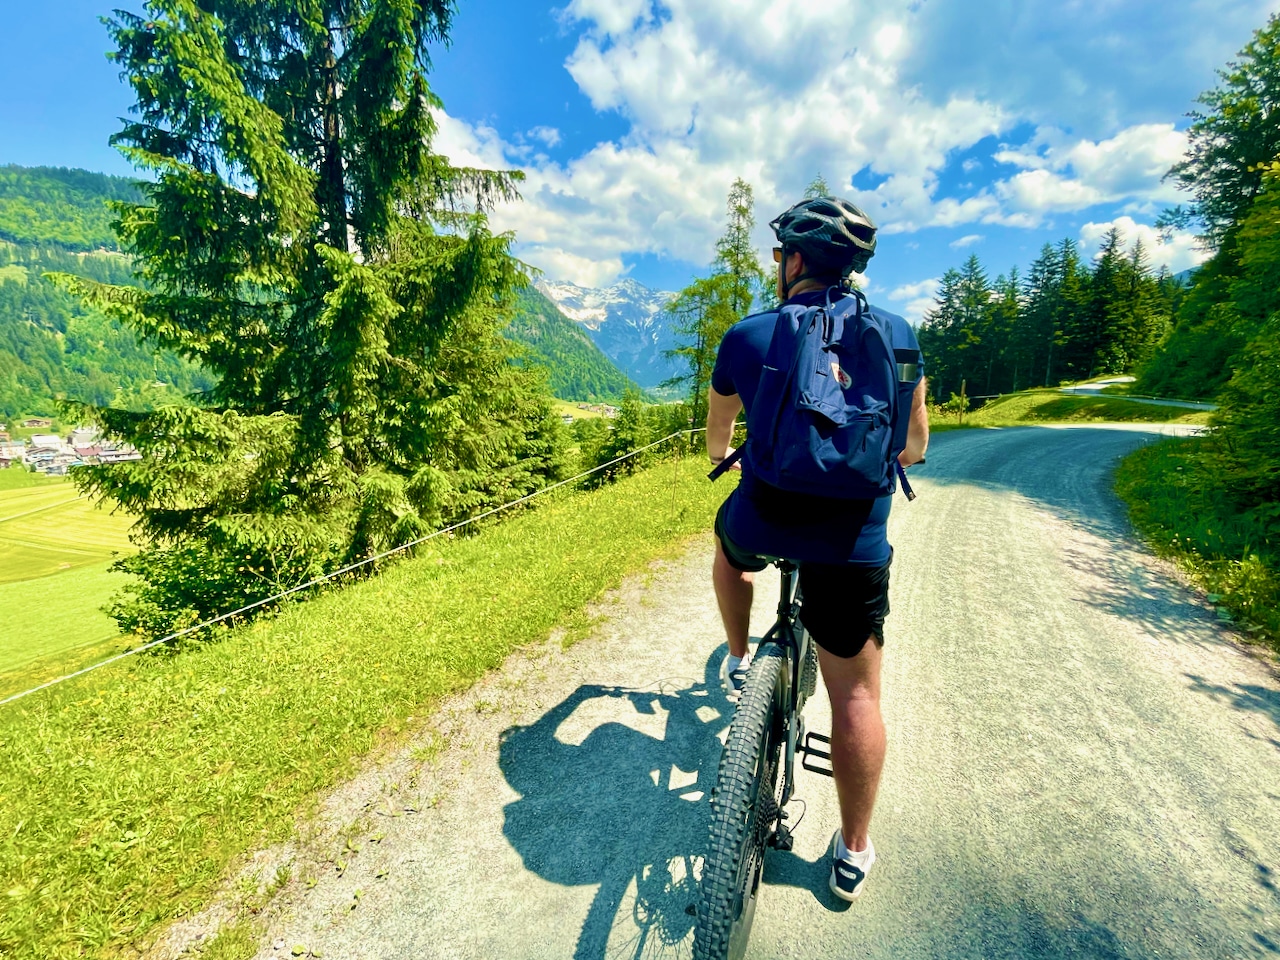 Con la bicicleta eléctrica puedes explorar maravillosamente el Pillerseetal. Travel Report Fieberbrunn Pillerseetal experiencias consejos lugares de interés actividades